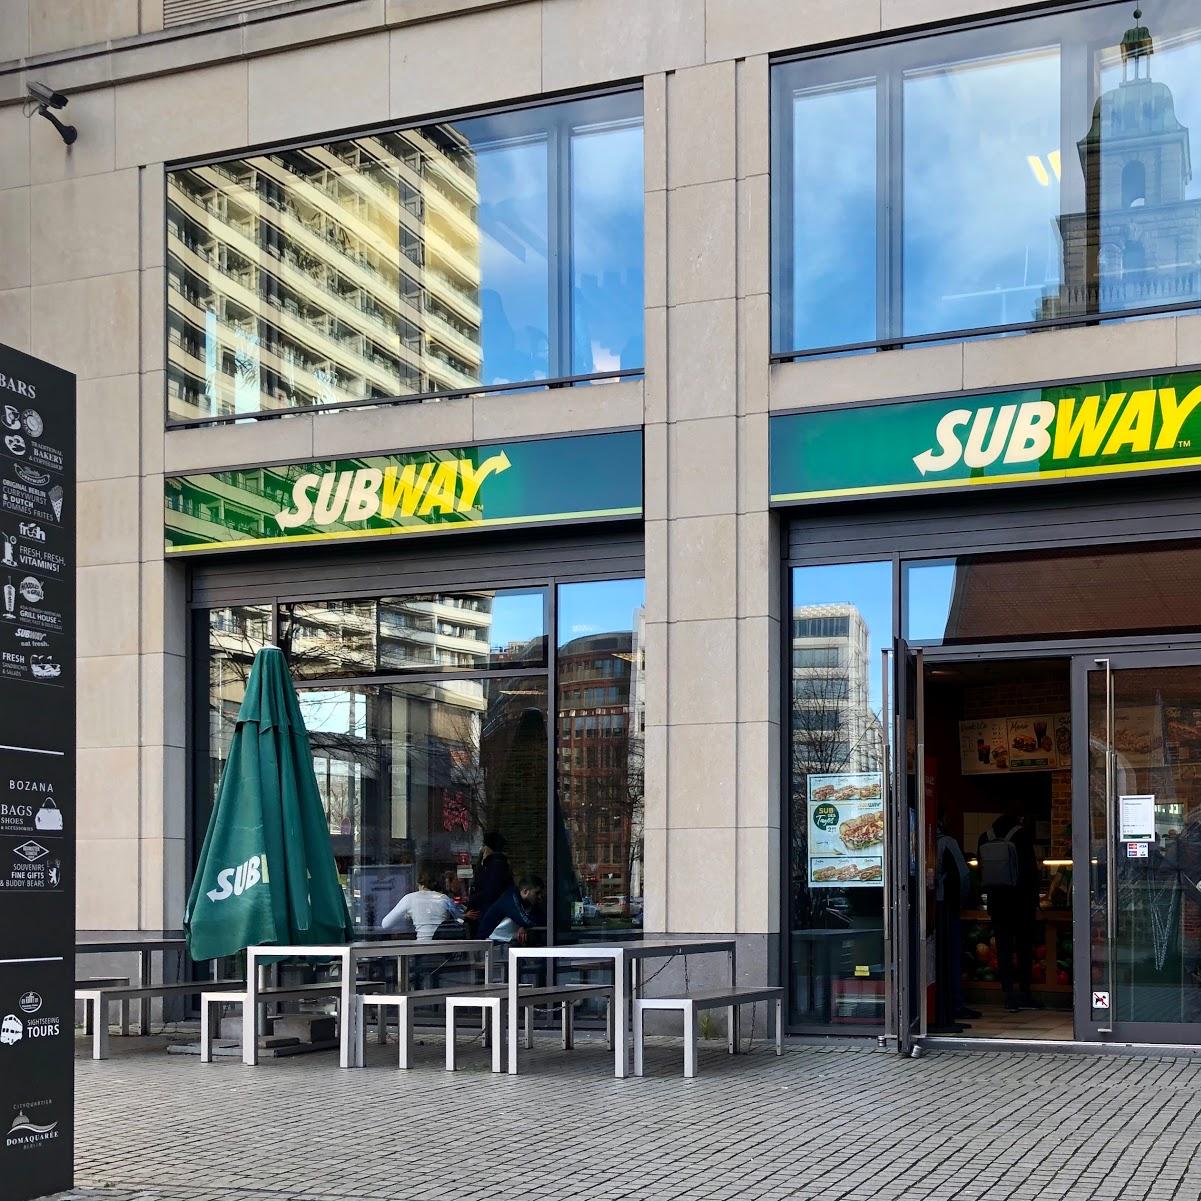 Restaurant "Subway" in Berlin